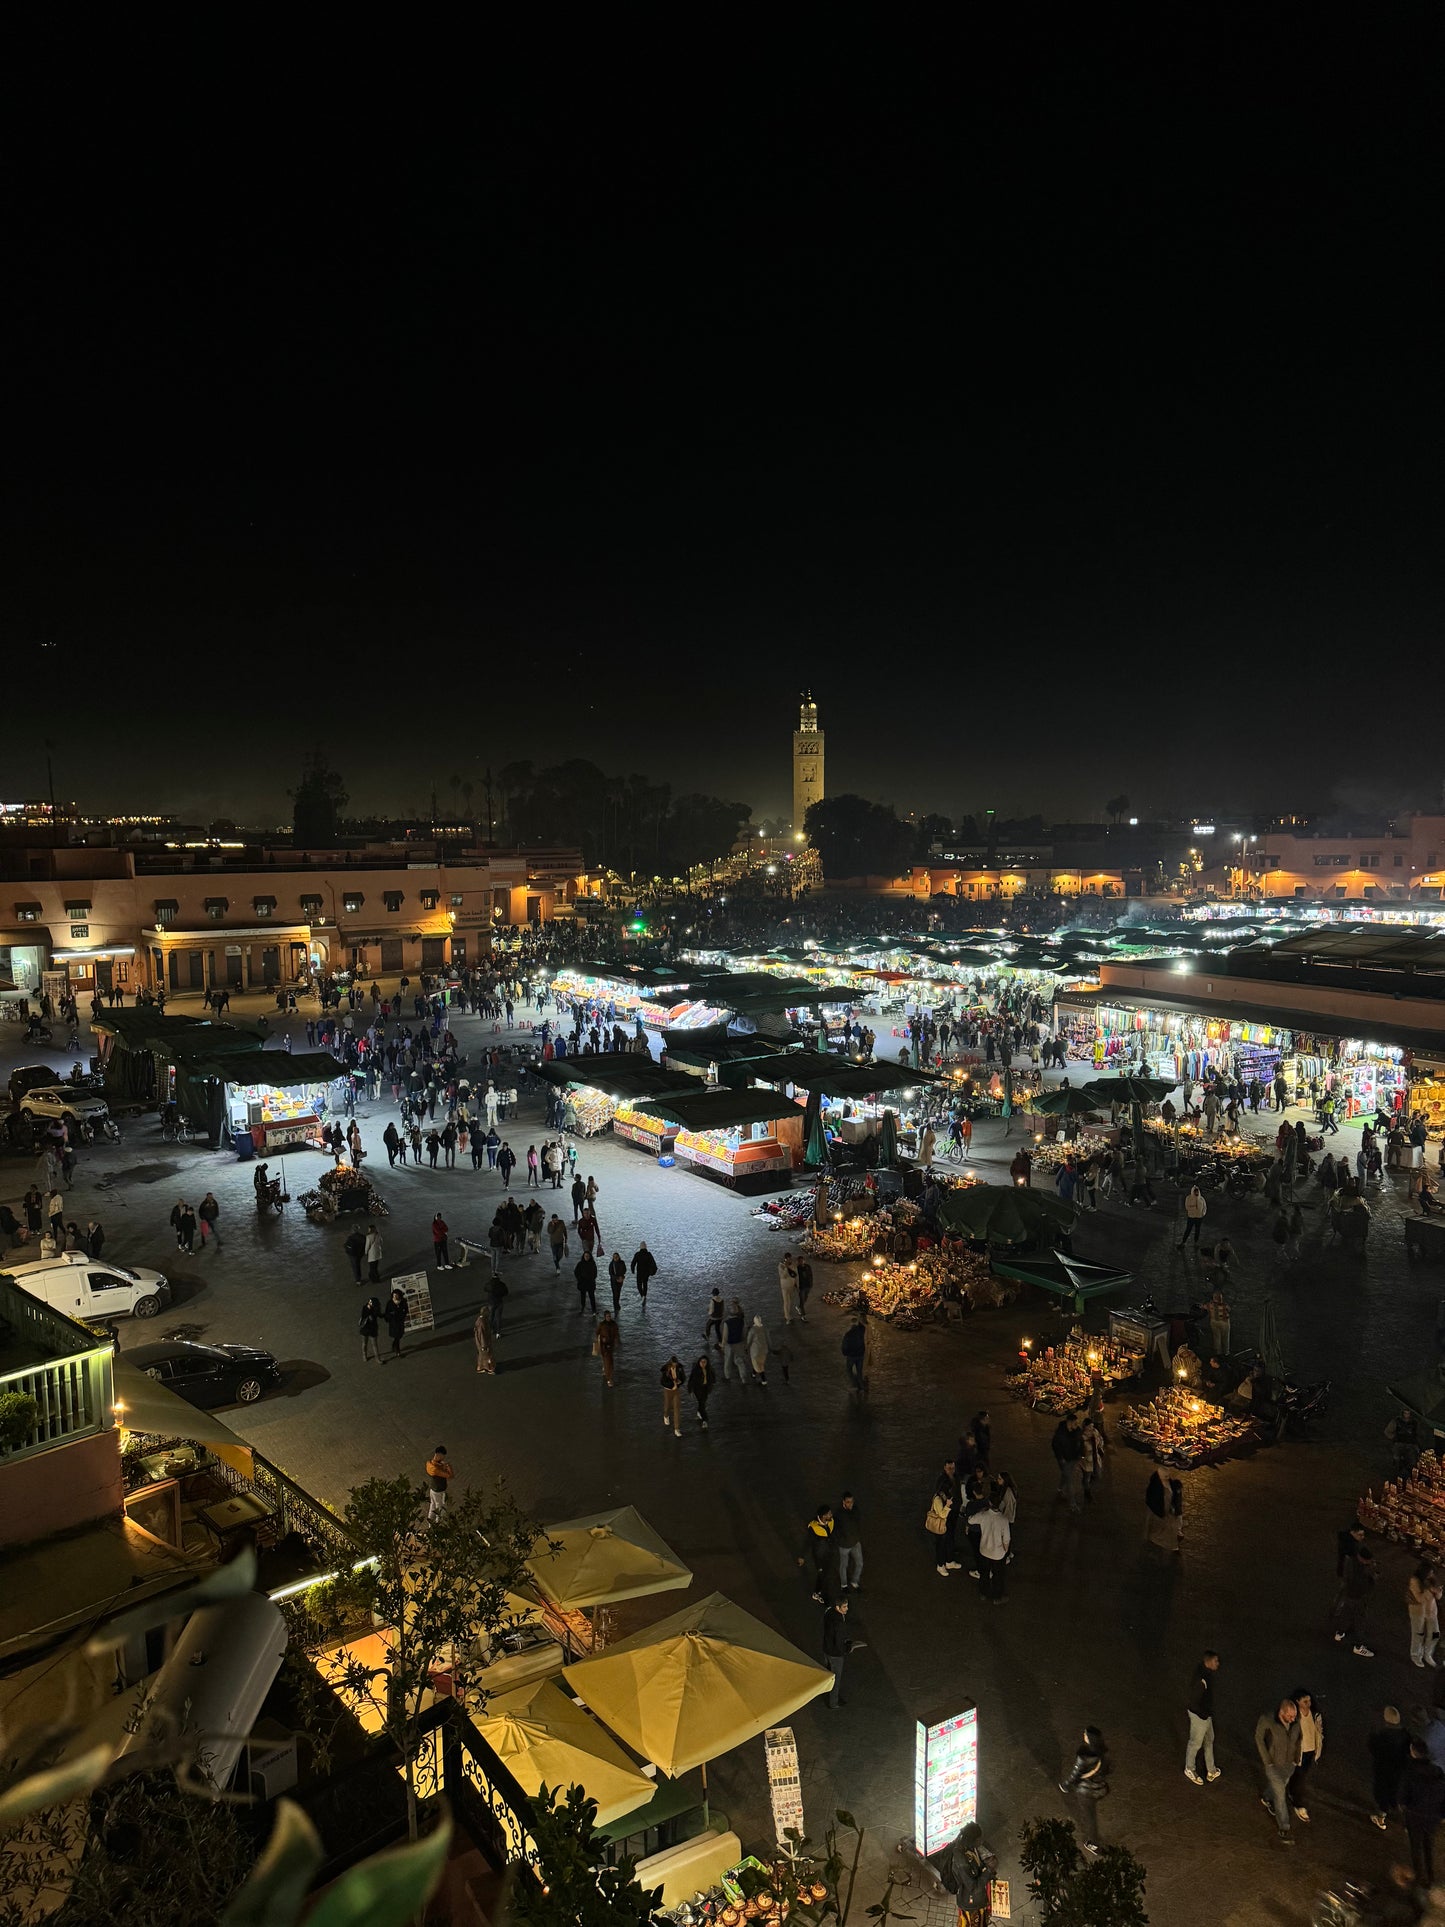 5 días Marrakech y desierto de Merzouga - Desde 299 euros (Deluxe)